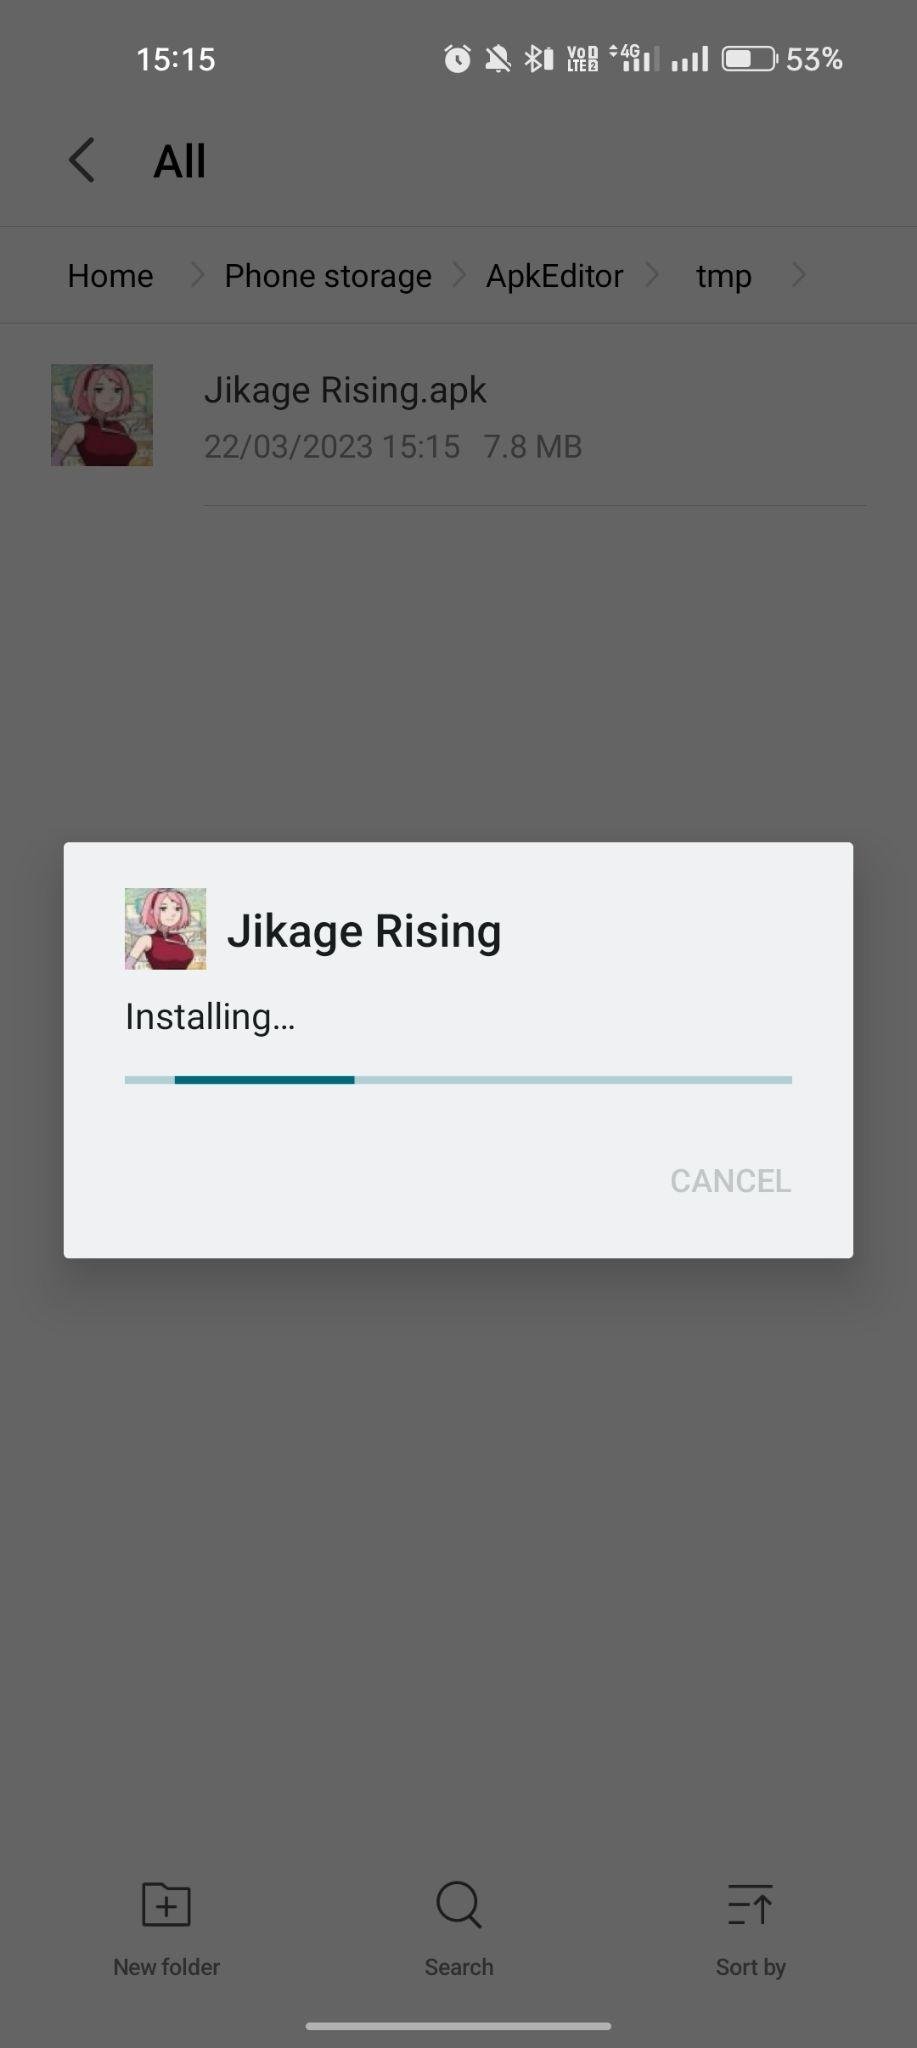 Jikage Rising apk installing